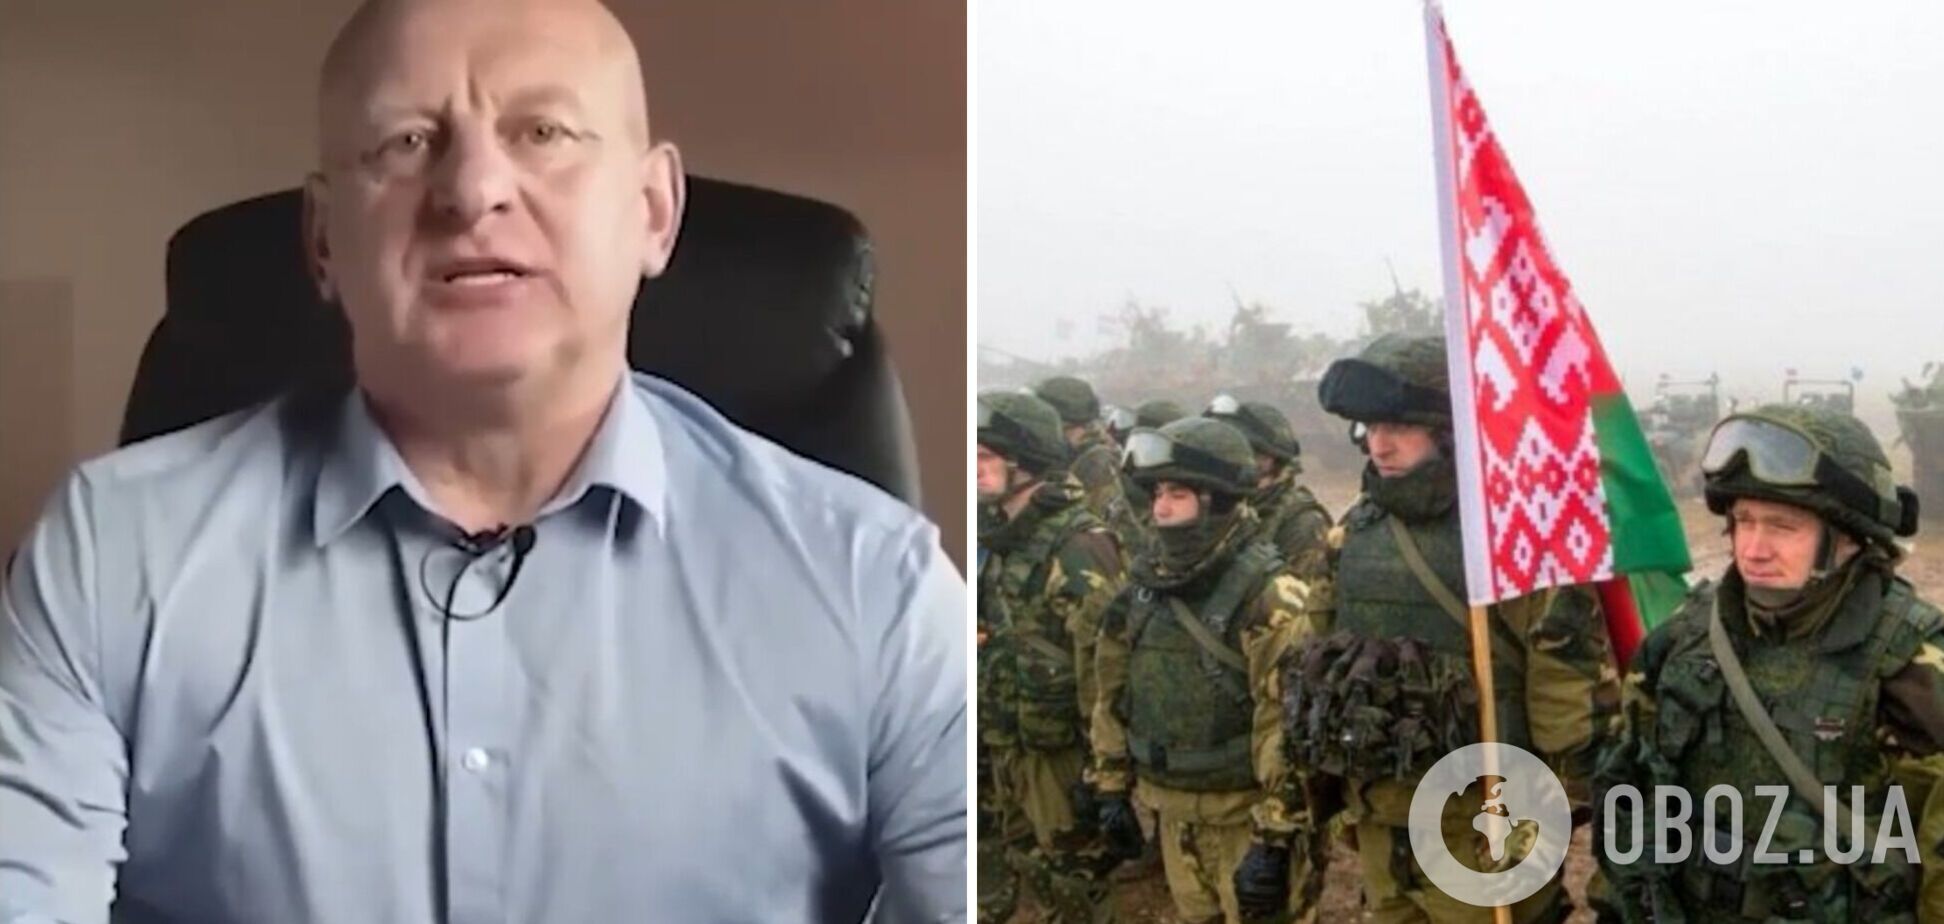 Беларусь будет ждать страшная расплата: беларусский полковник предупредил о катастрофических последствиях в случае прямого участия в войне. Видео